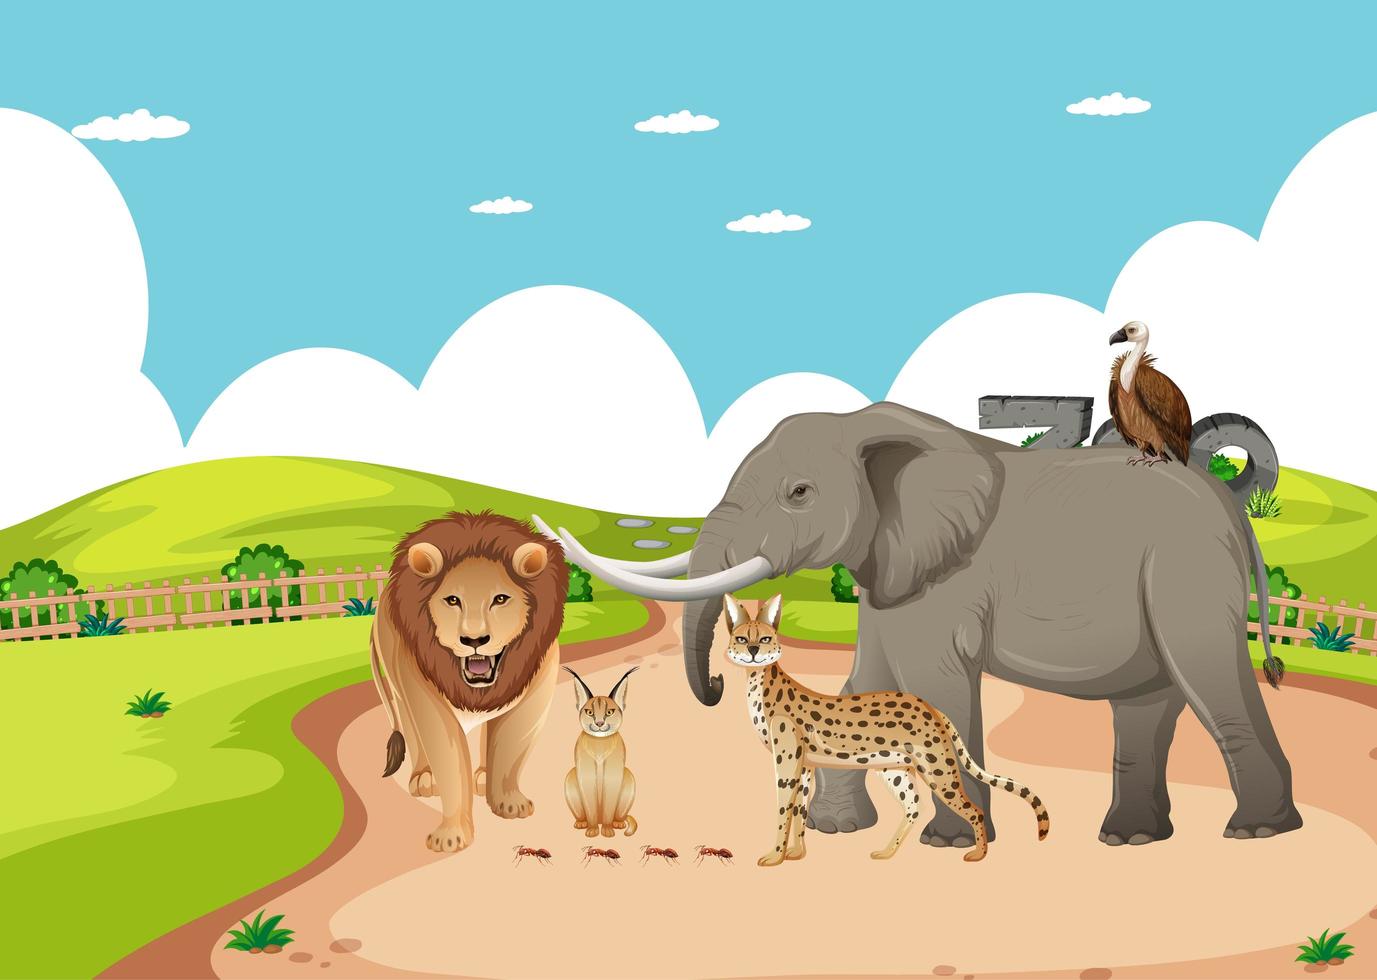 Grupo de animales salvajes africanos en la escena del zoológico vector